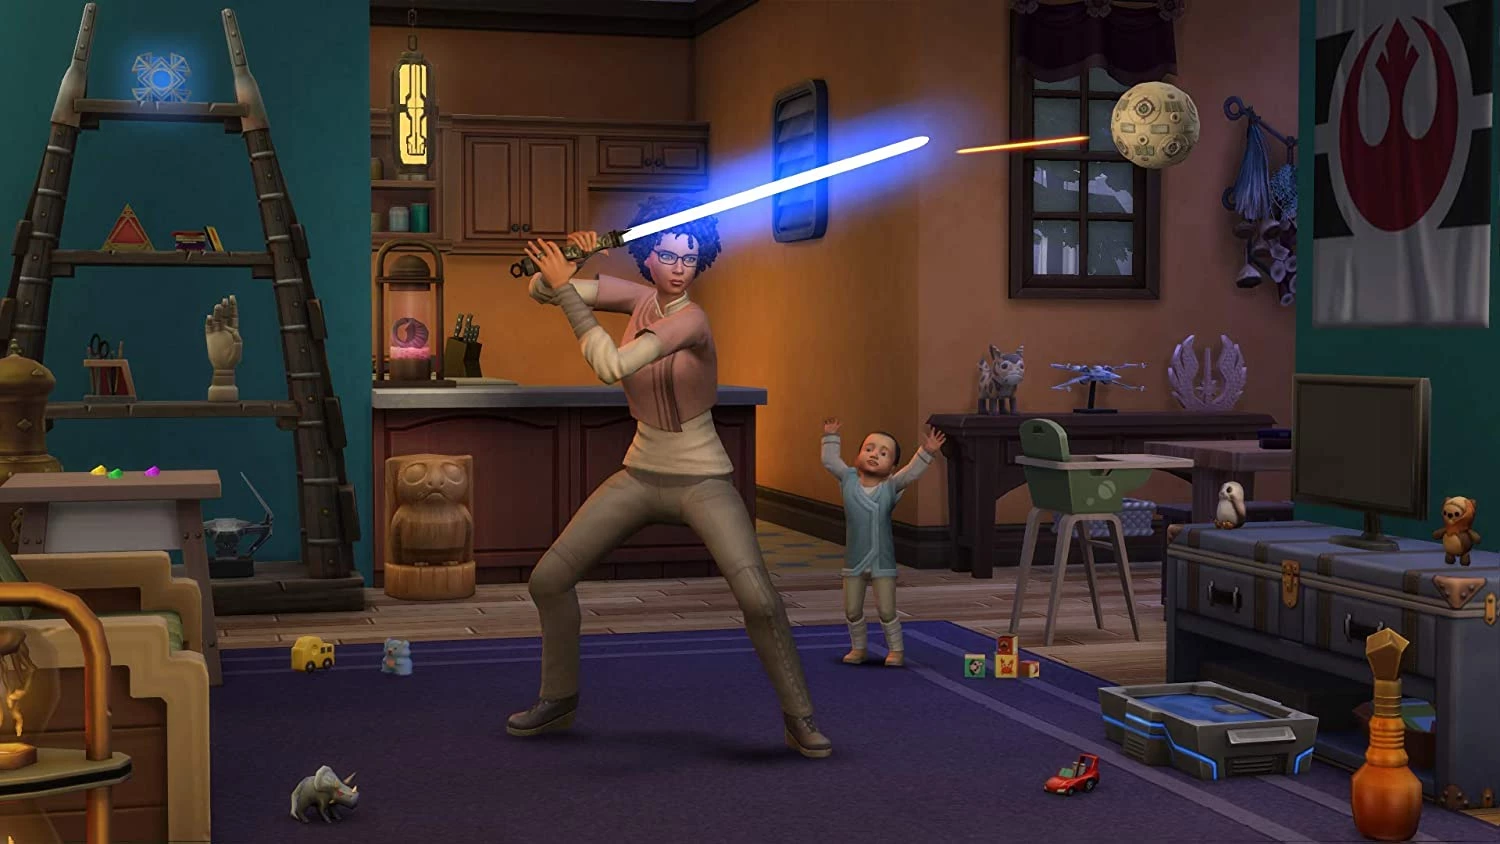 De Sims 4 Star Wars Journey to Batuu Bundle voor de PlayStation 4 kopen op nedgame.nl